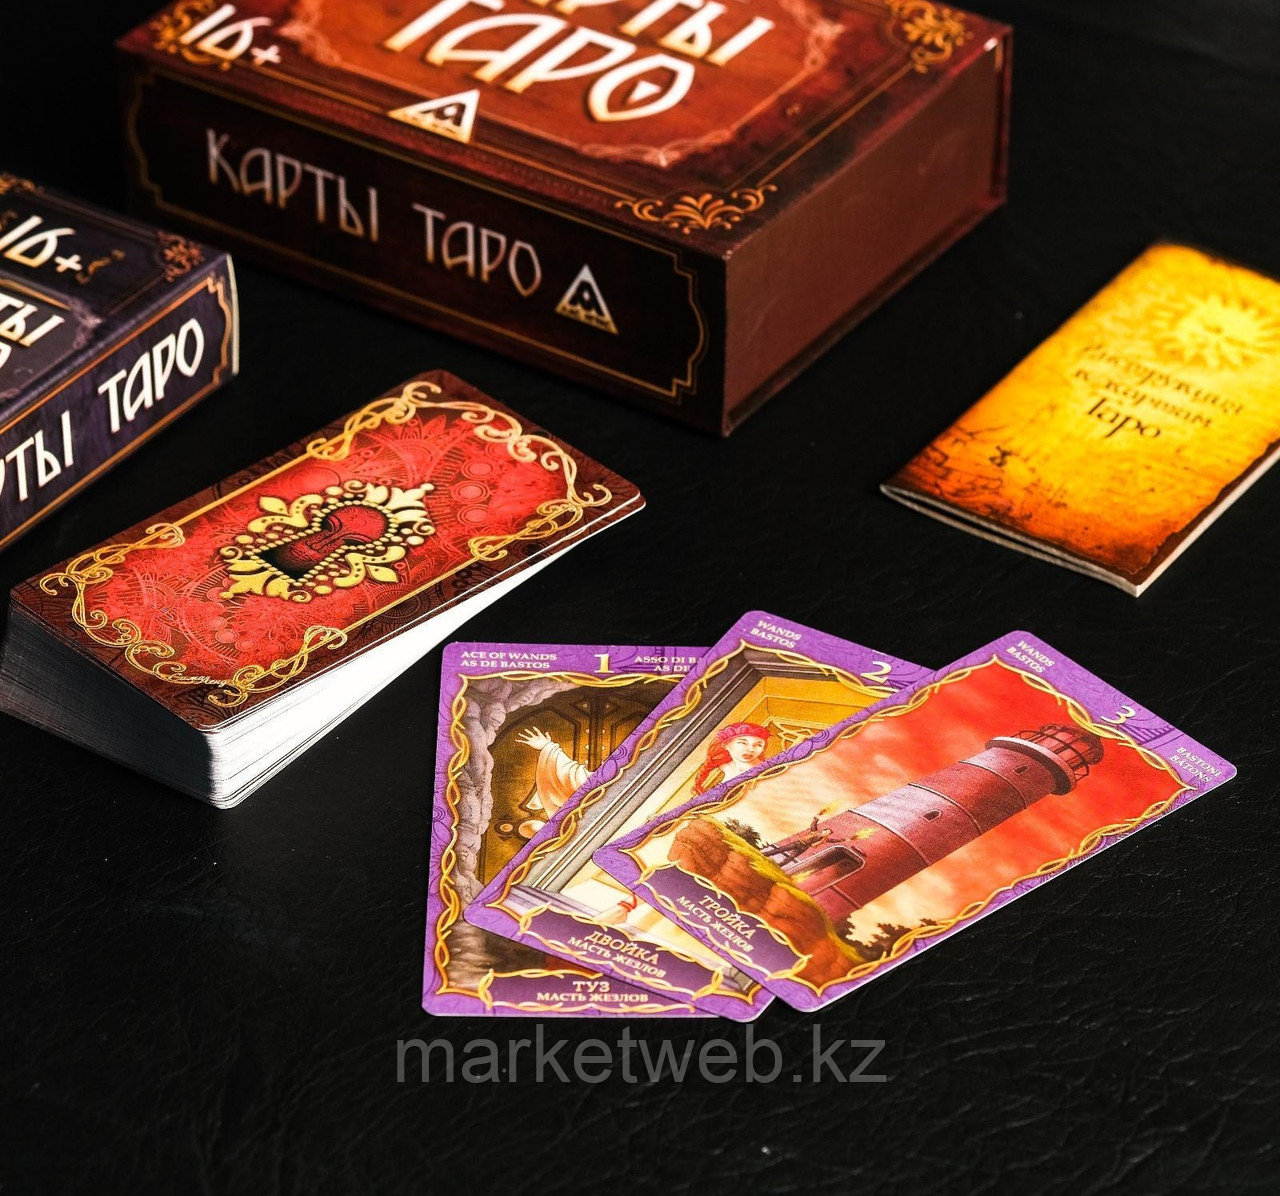 Купить наборы карт. Лас Играс Таро. Таро подарочный набор. Карты Таро в розовом цвете. Лас Играс карты «Таро», 78 шт..